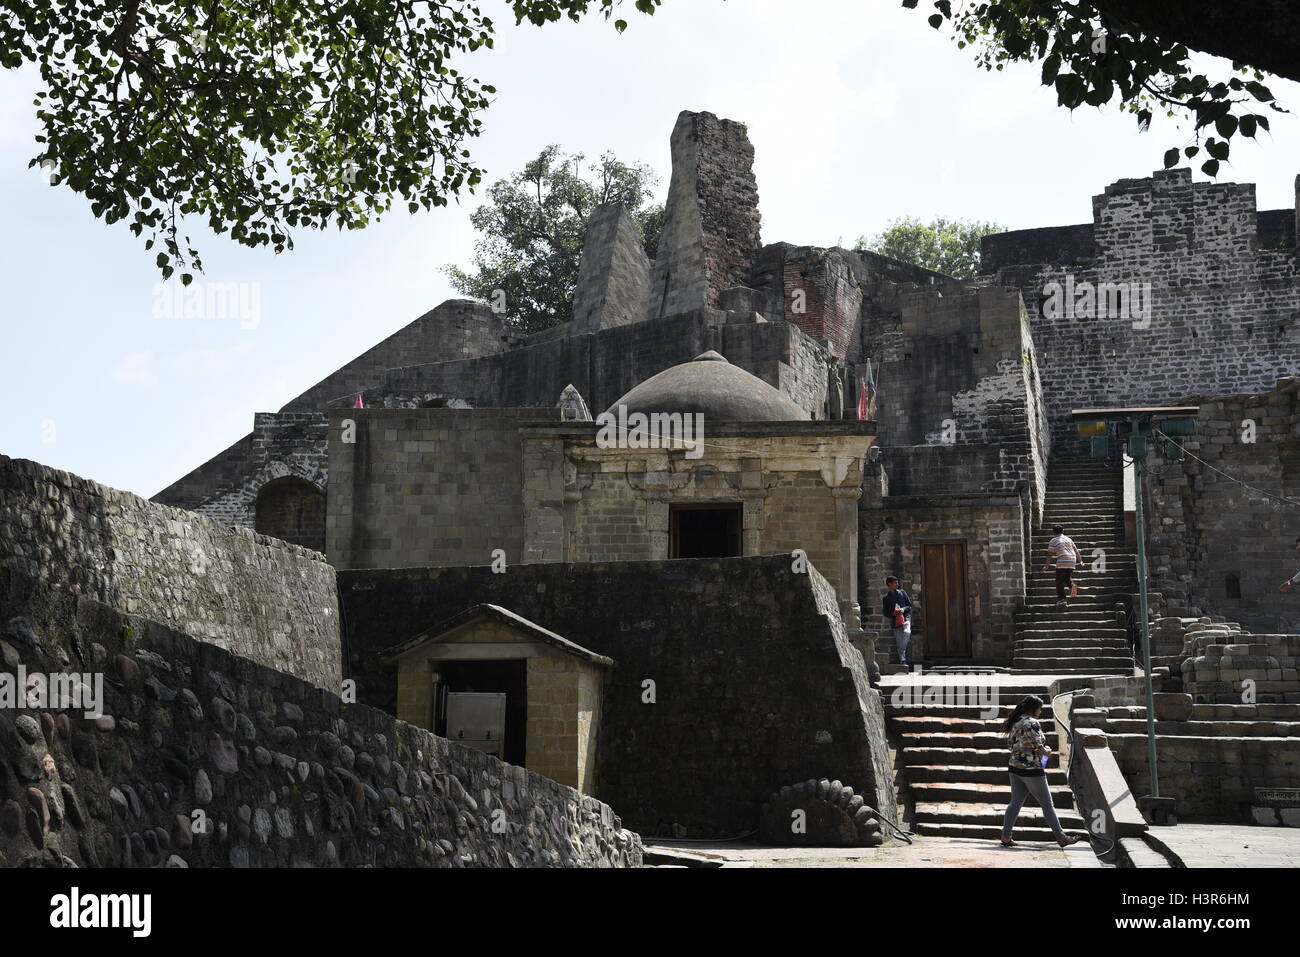 La arquitectura histórica Kangra Fort está situado a 20 kilómetros de la ciudad de Dharamsala, en las afueras de Kangra, India. Foto de stock